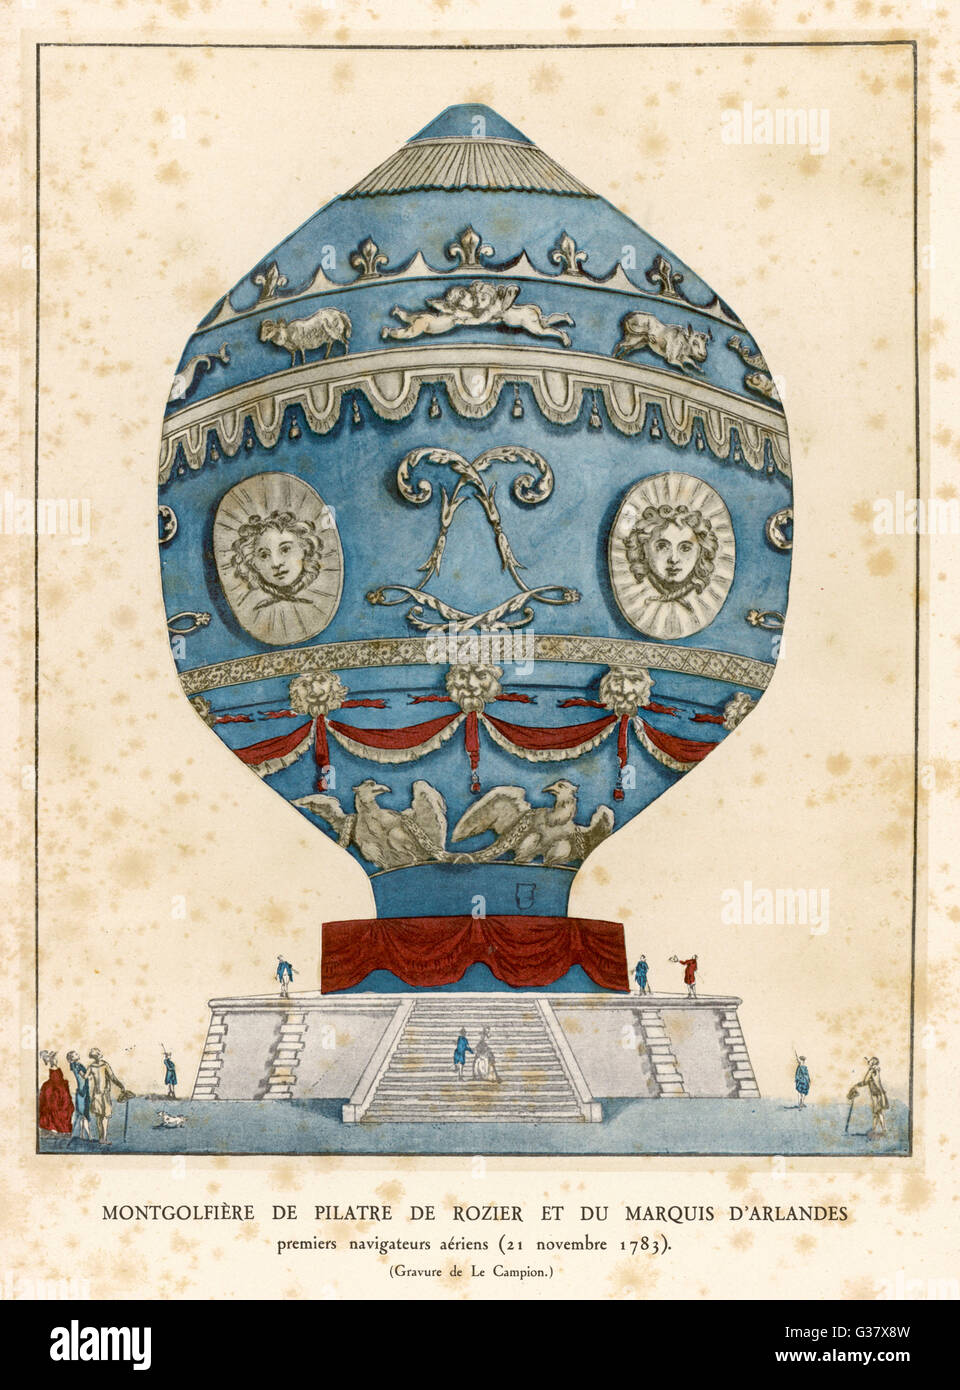 PILATRE DE Rozier et le marquis d'Arlandes faire avec succès le premier vol habité dans un ballon Montgolfier (air chaud) à Paris Date : 21 Novembre 1783 Banque D'Images